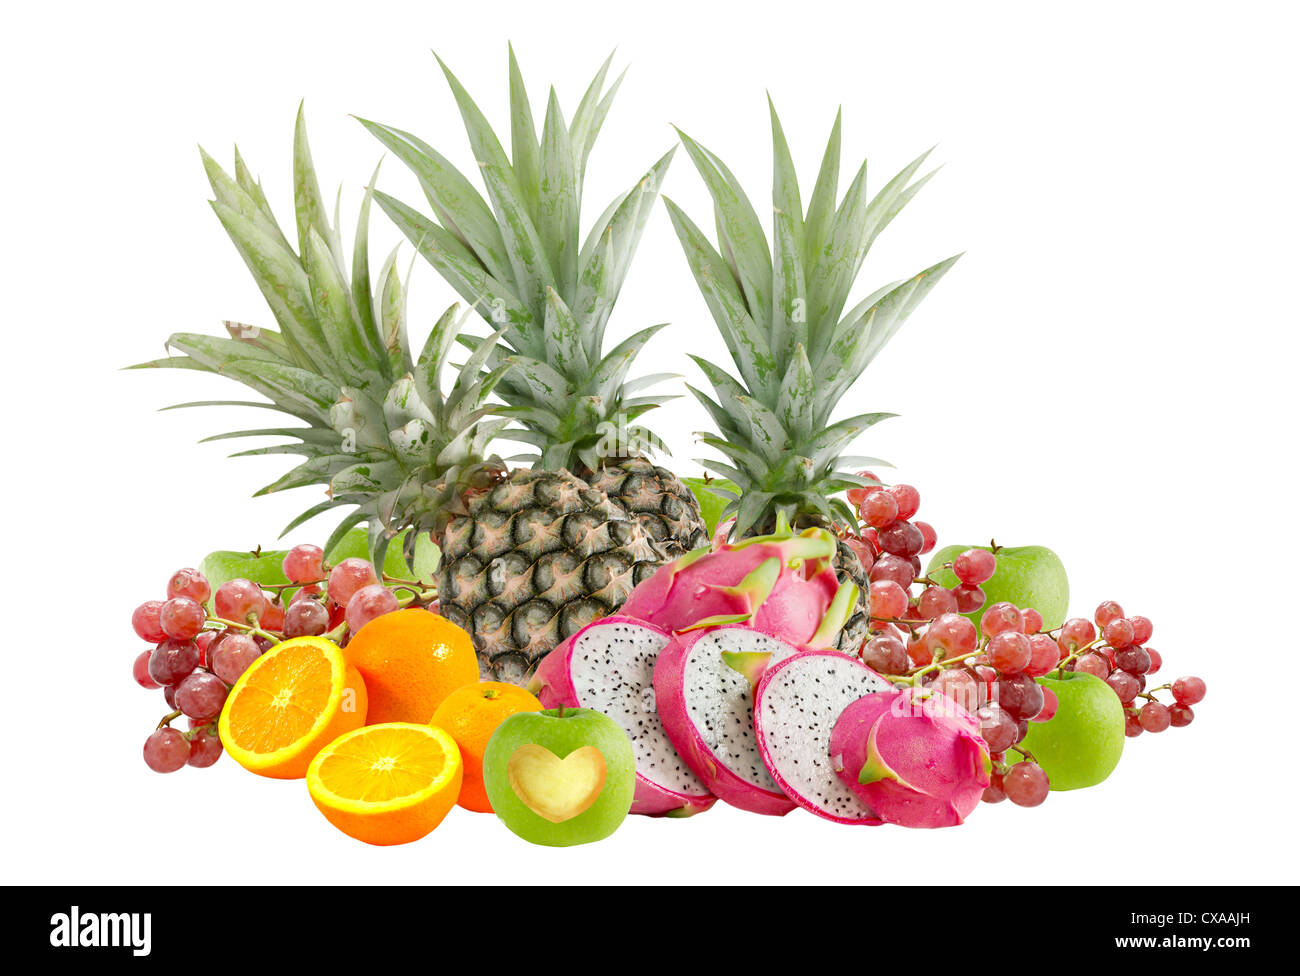 Fresh mix fruits on white background Stock Photo